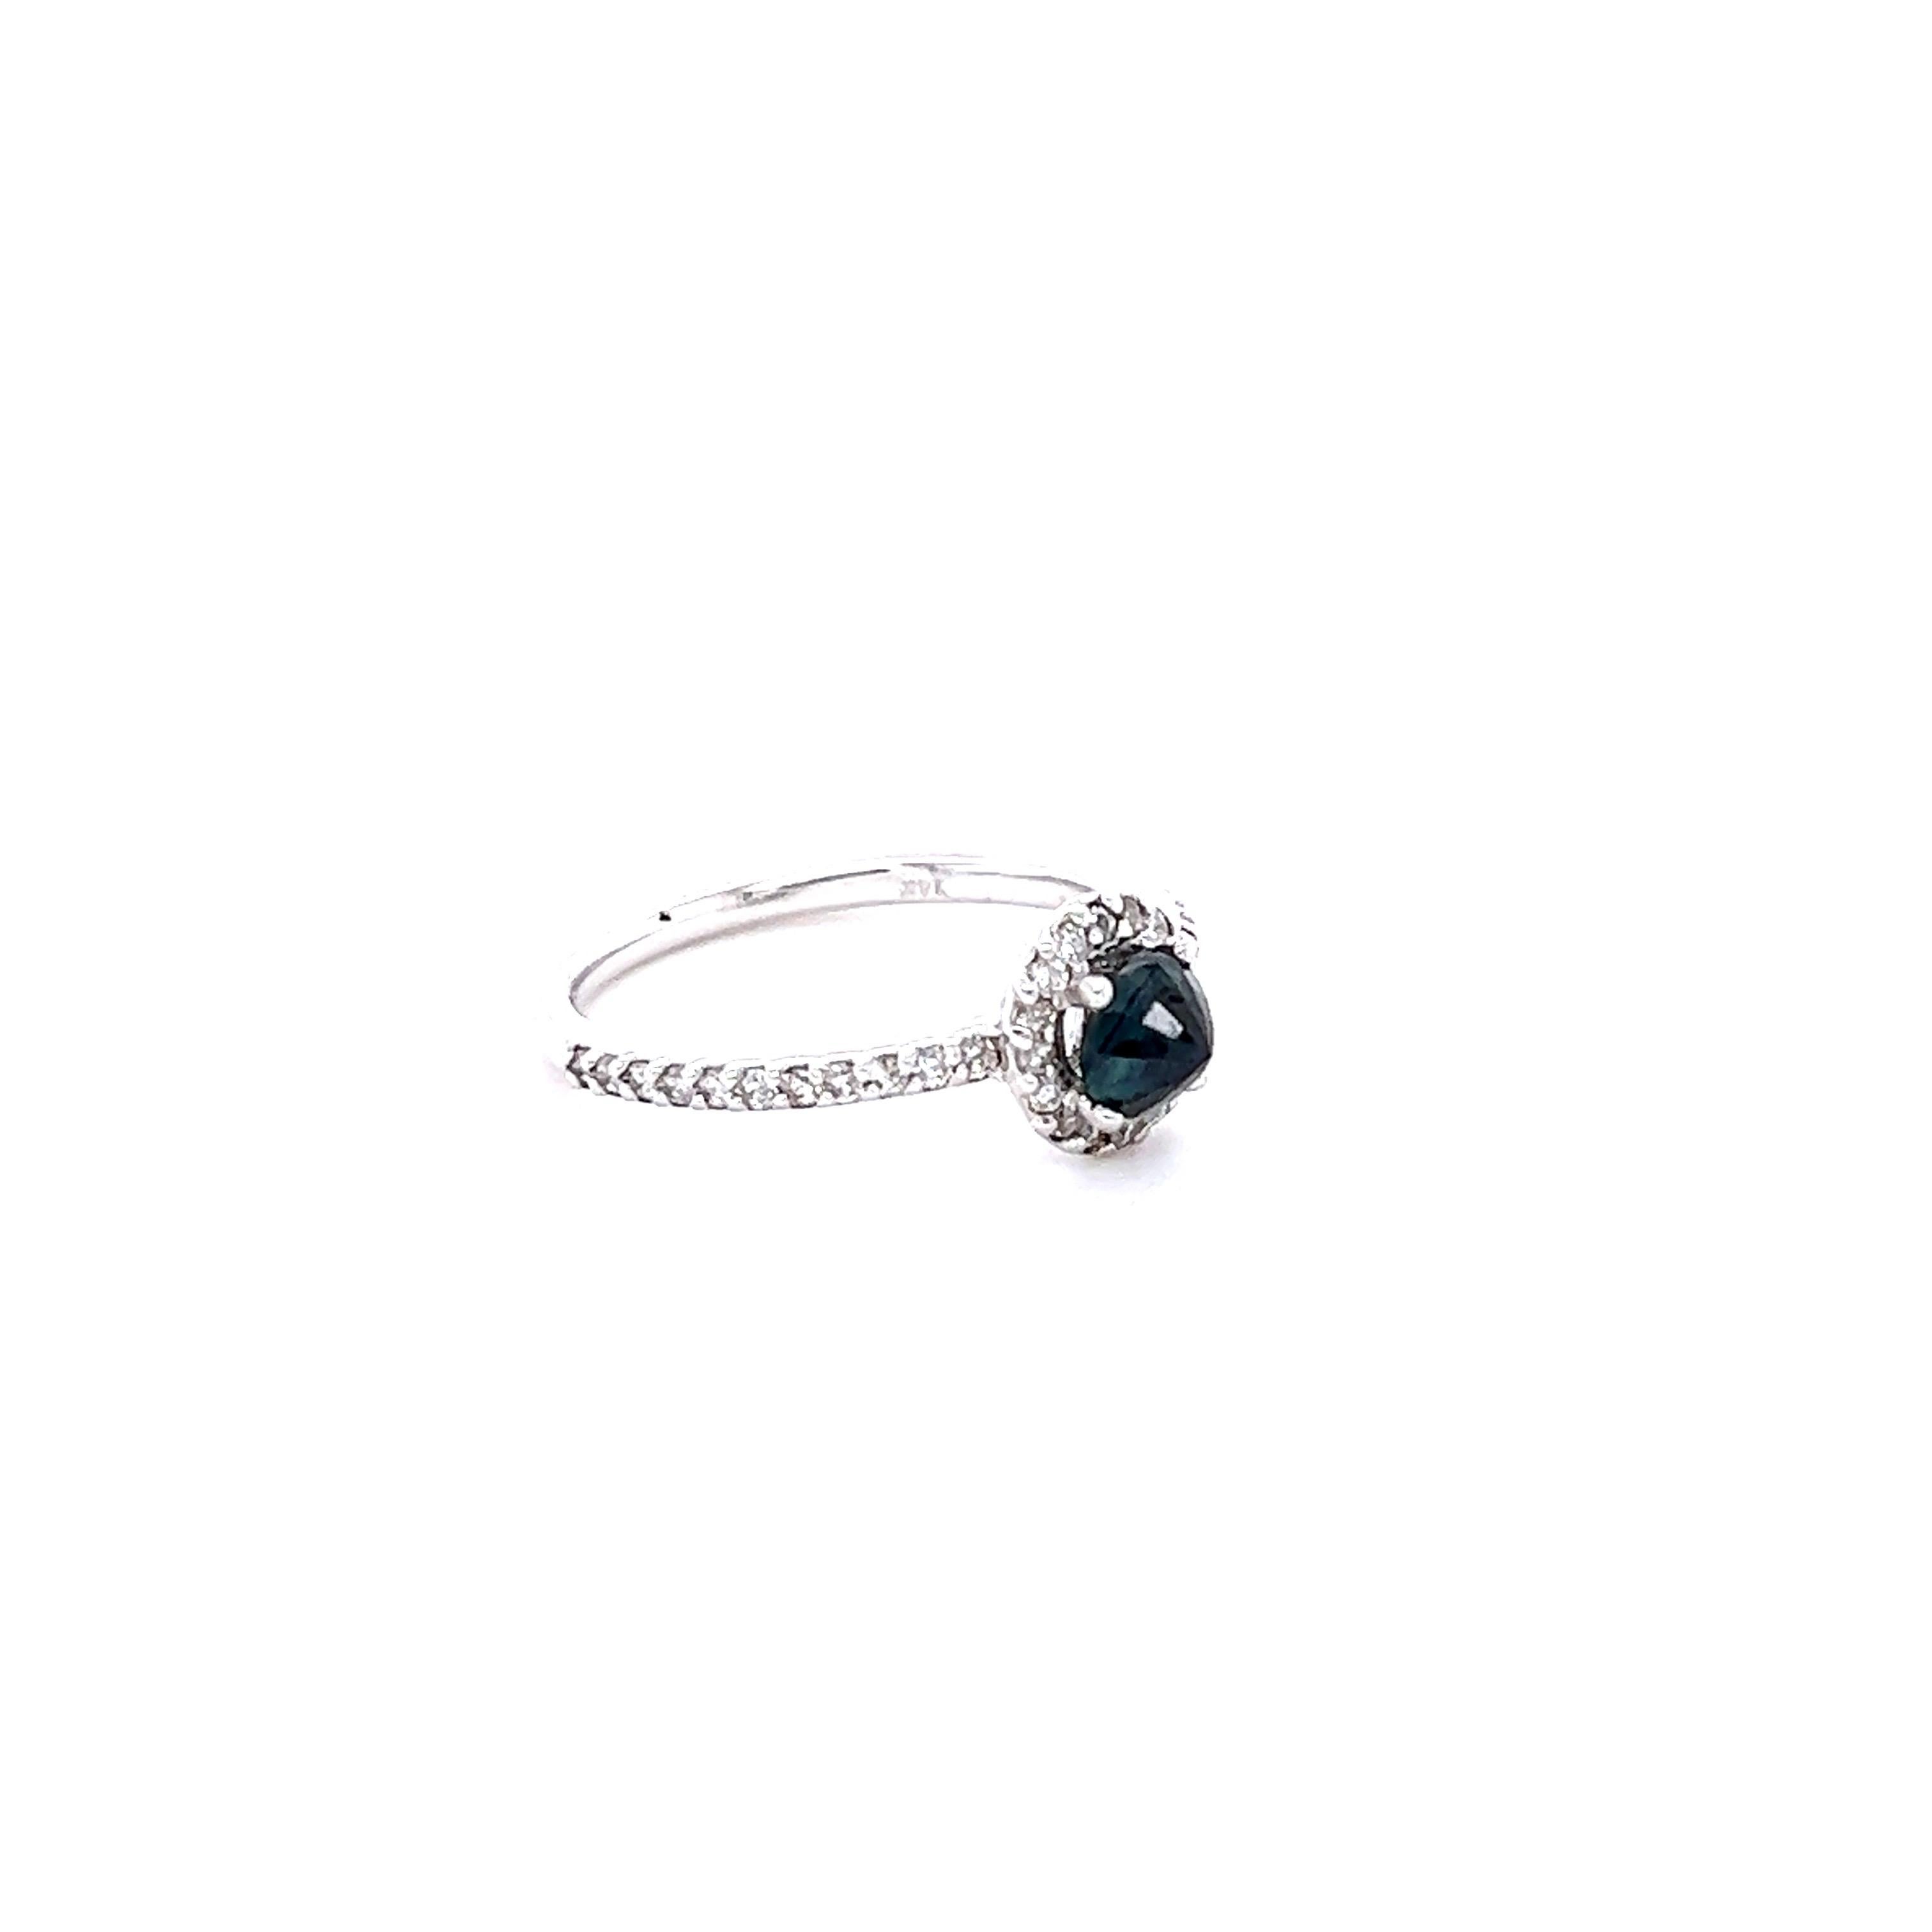 Einfach schöner Saphir-Diamant-Ring mit einem Saphir im Rundschliff, der 0,77 Karat wiegt und 5 mm misst.  Es hat auch 38 Round Cut Diamanten, die 0,37 Karat wiegt. Das Gesamtkaratgewicht des Rings beträgt 1,14 Karat. Die Reinheit und Farbe der